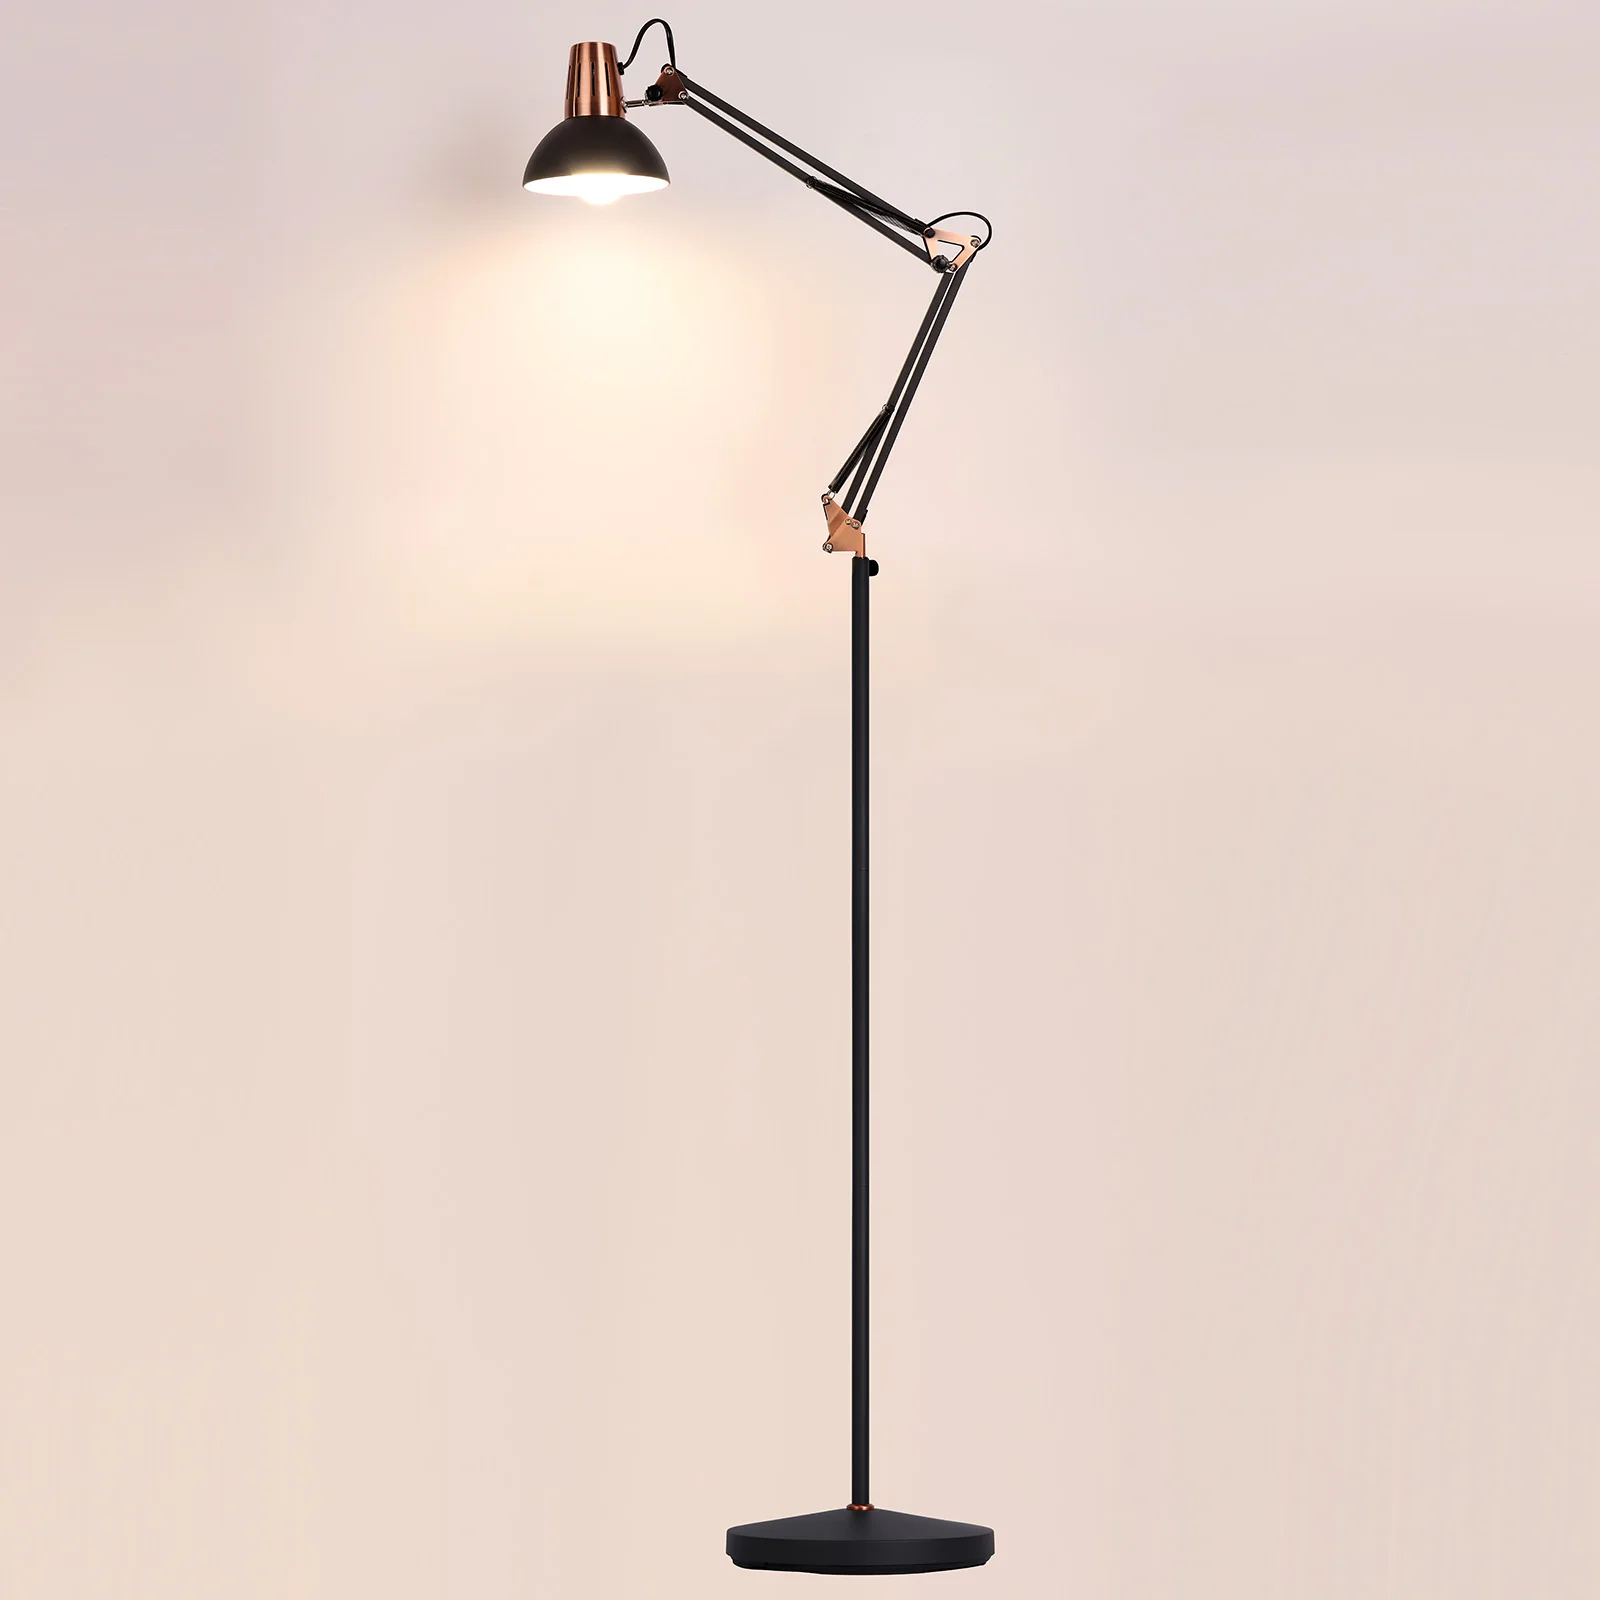 FIRVRE-Lámpara de pie con brazo oscilante de Metal, lámpara de escritorio ajustable, diseño Industrial, E27, luz colgante de lectura para arquitectónicos, color negro, L